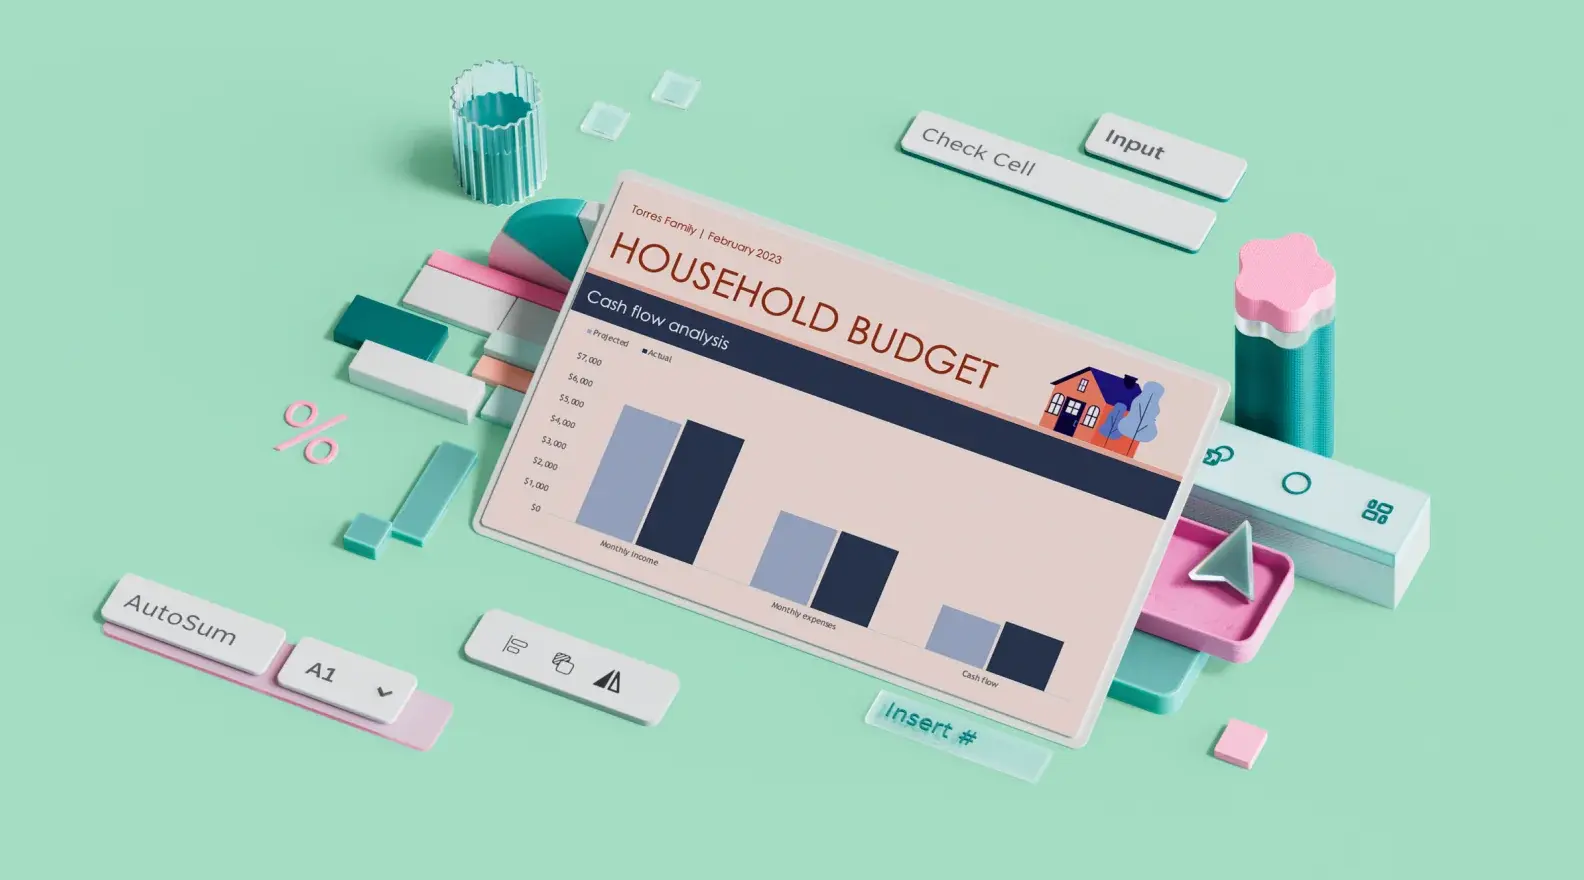 Modelo de orçamento doméstico do Microsoft Excel cercado por elementos de design 3D